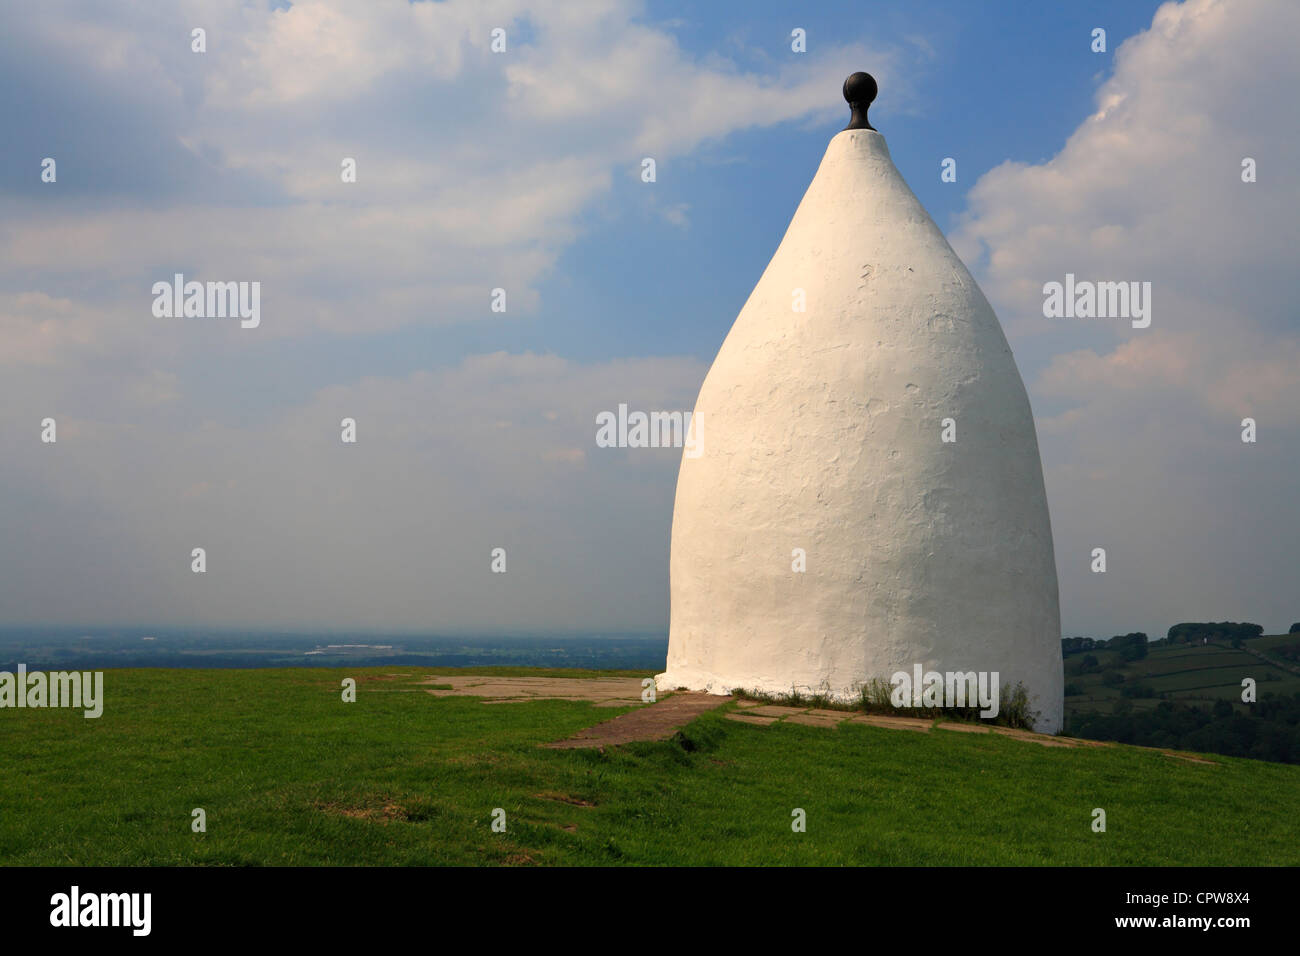 White Nancy on the ridge of the Saddle of Kerridge, Bollington, Cheshire, England, UK. Stock Photo